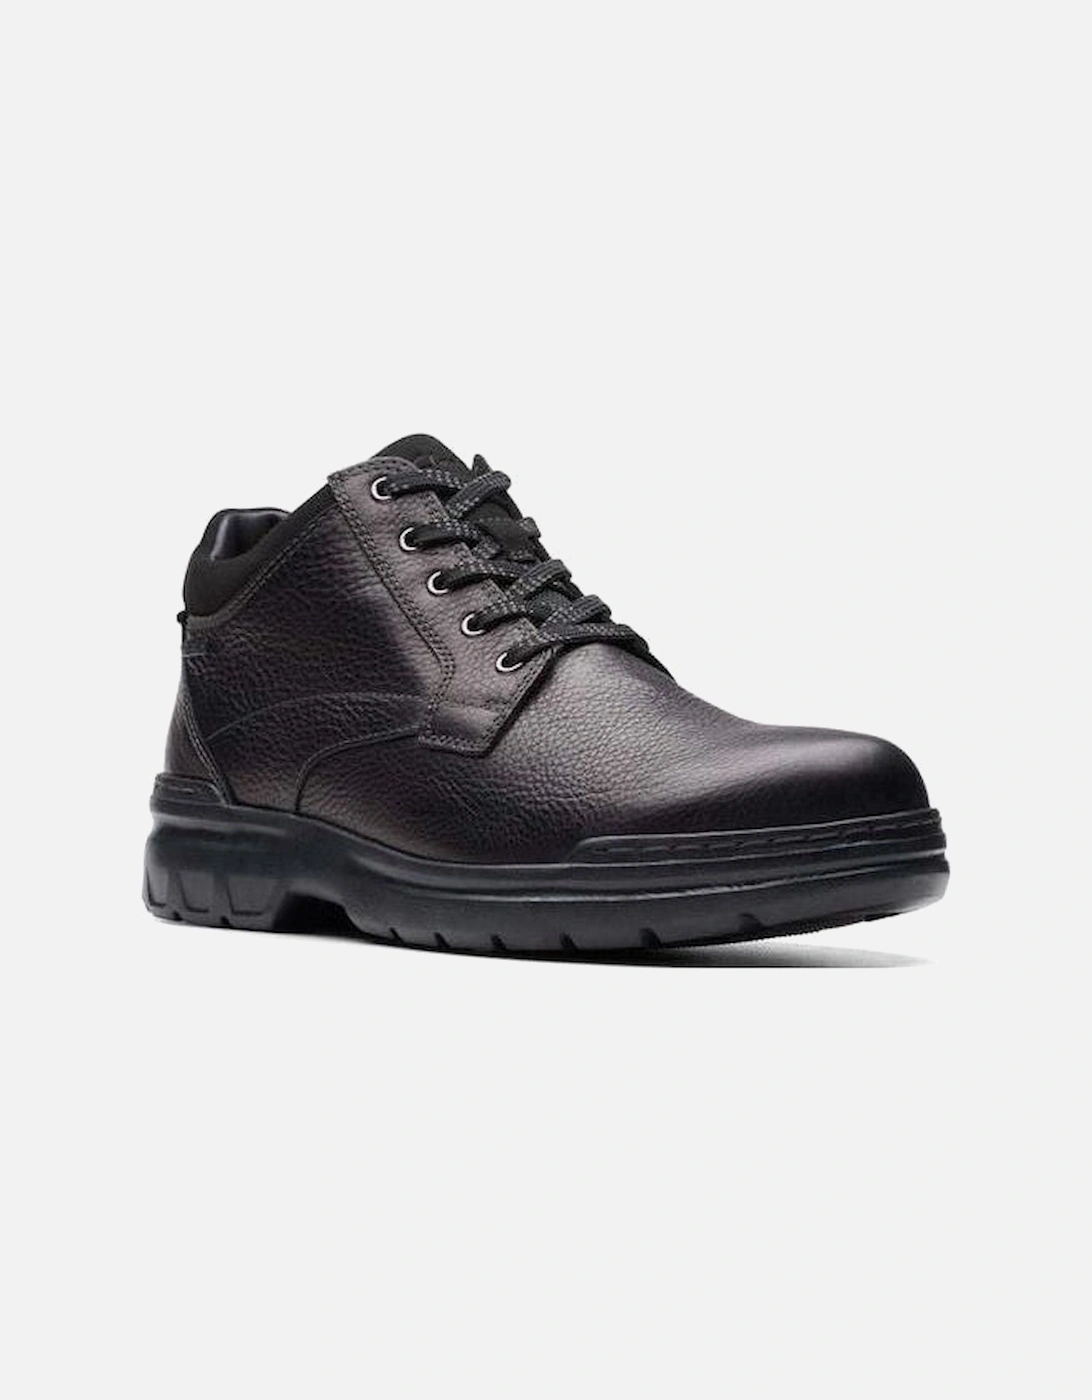 Rockie MidGTX waterproof black leather boot, 2 of 1